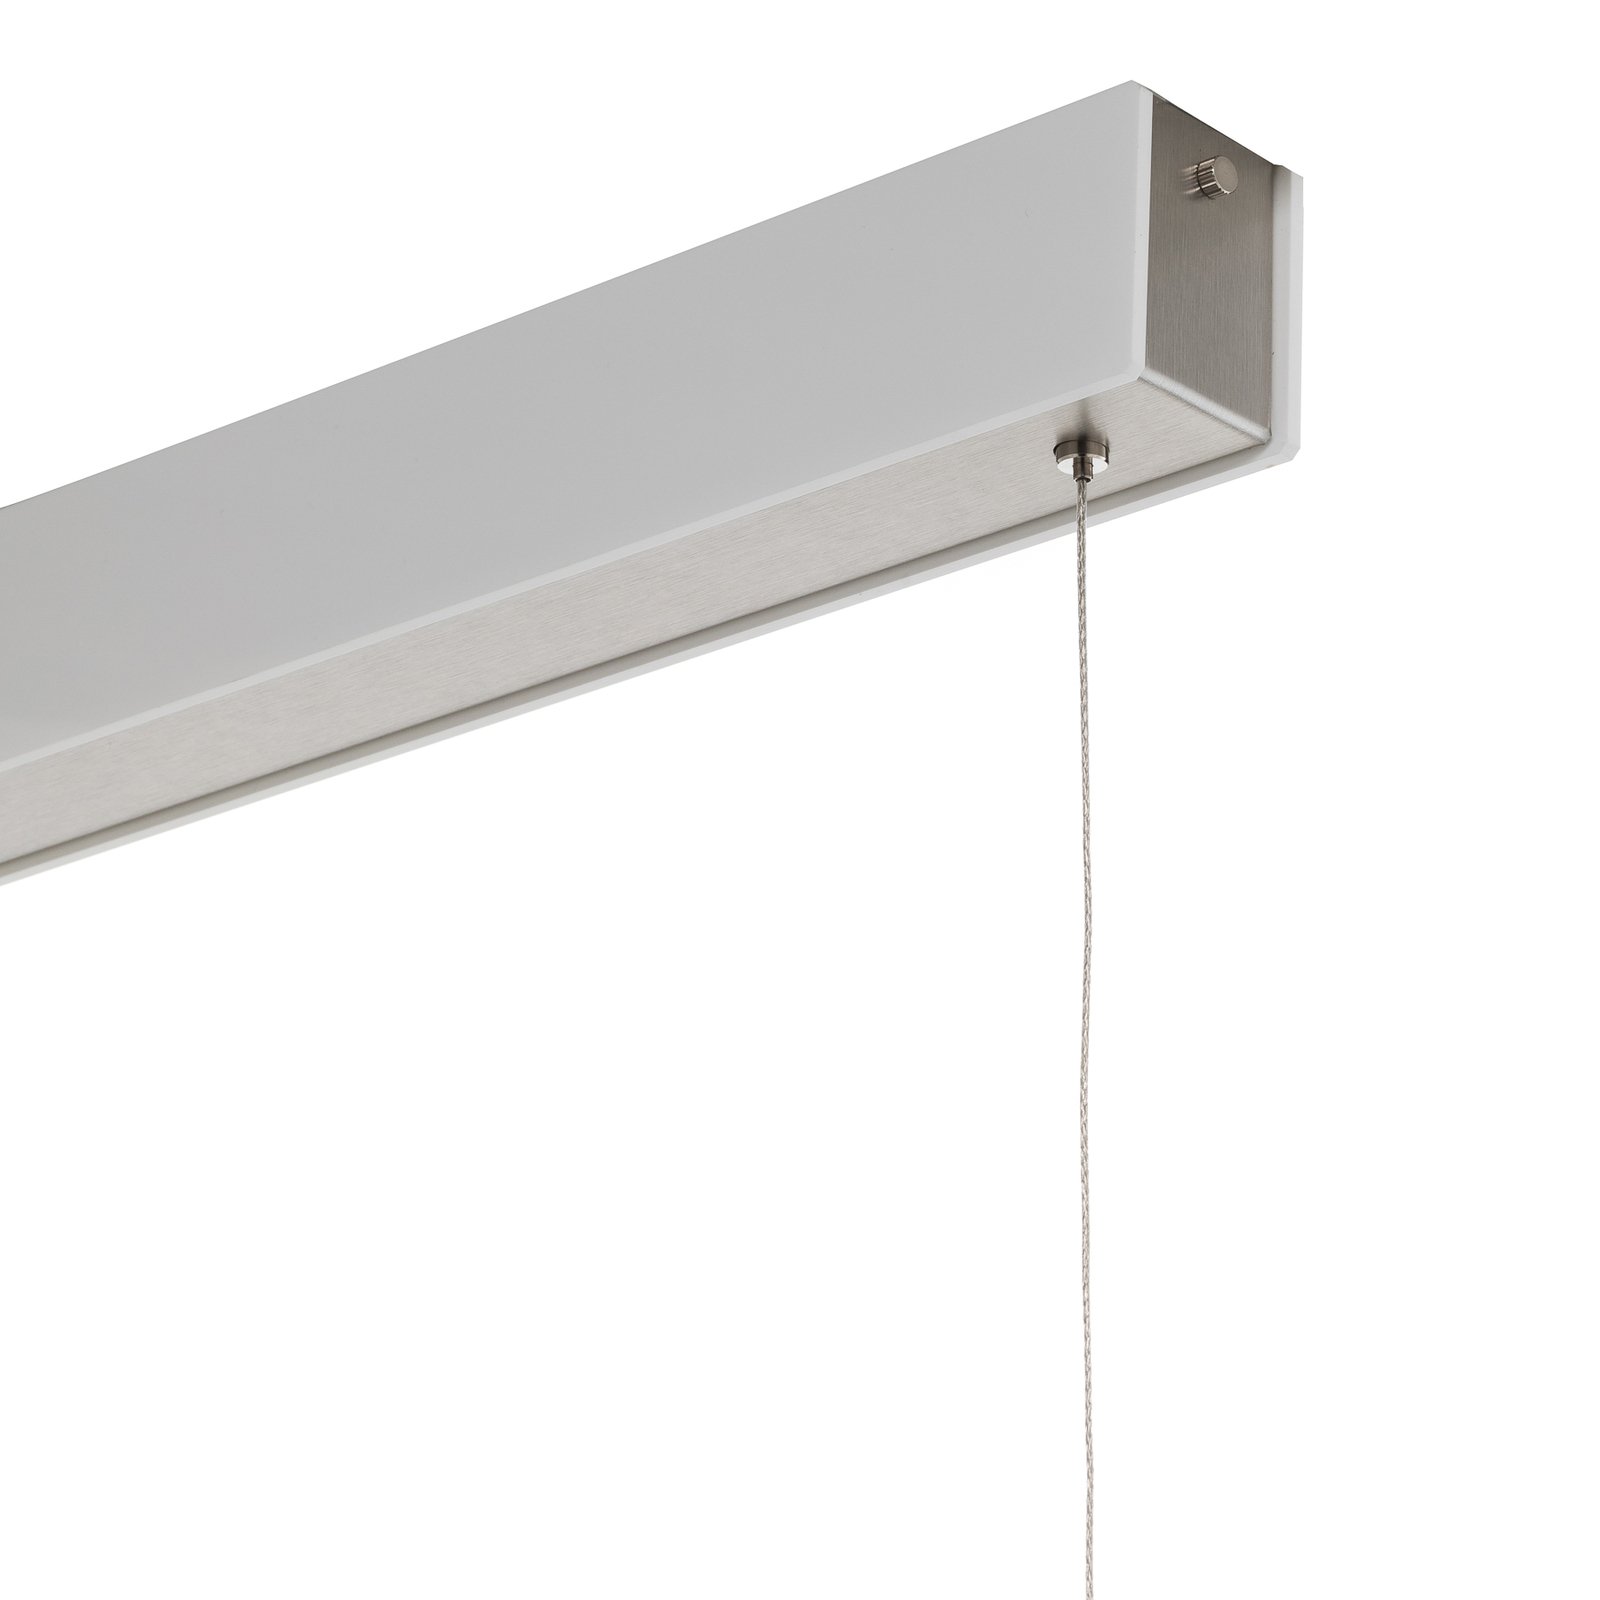 Candeeiro suspenso Orix LED, branco, 150 cm de comprimento